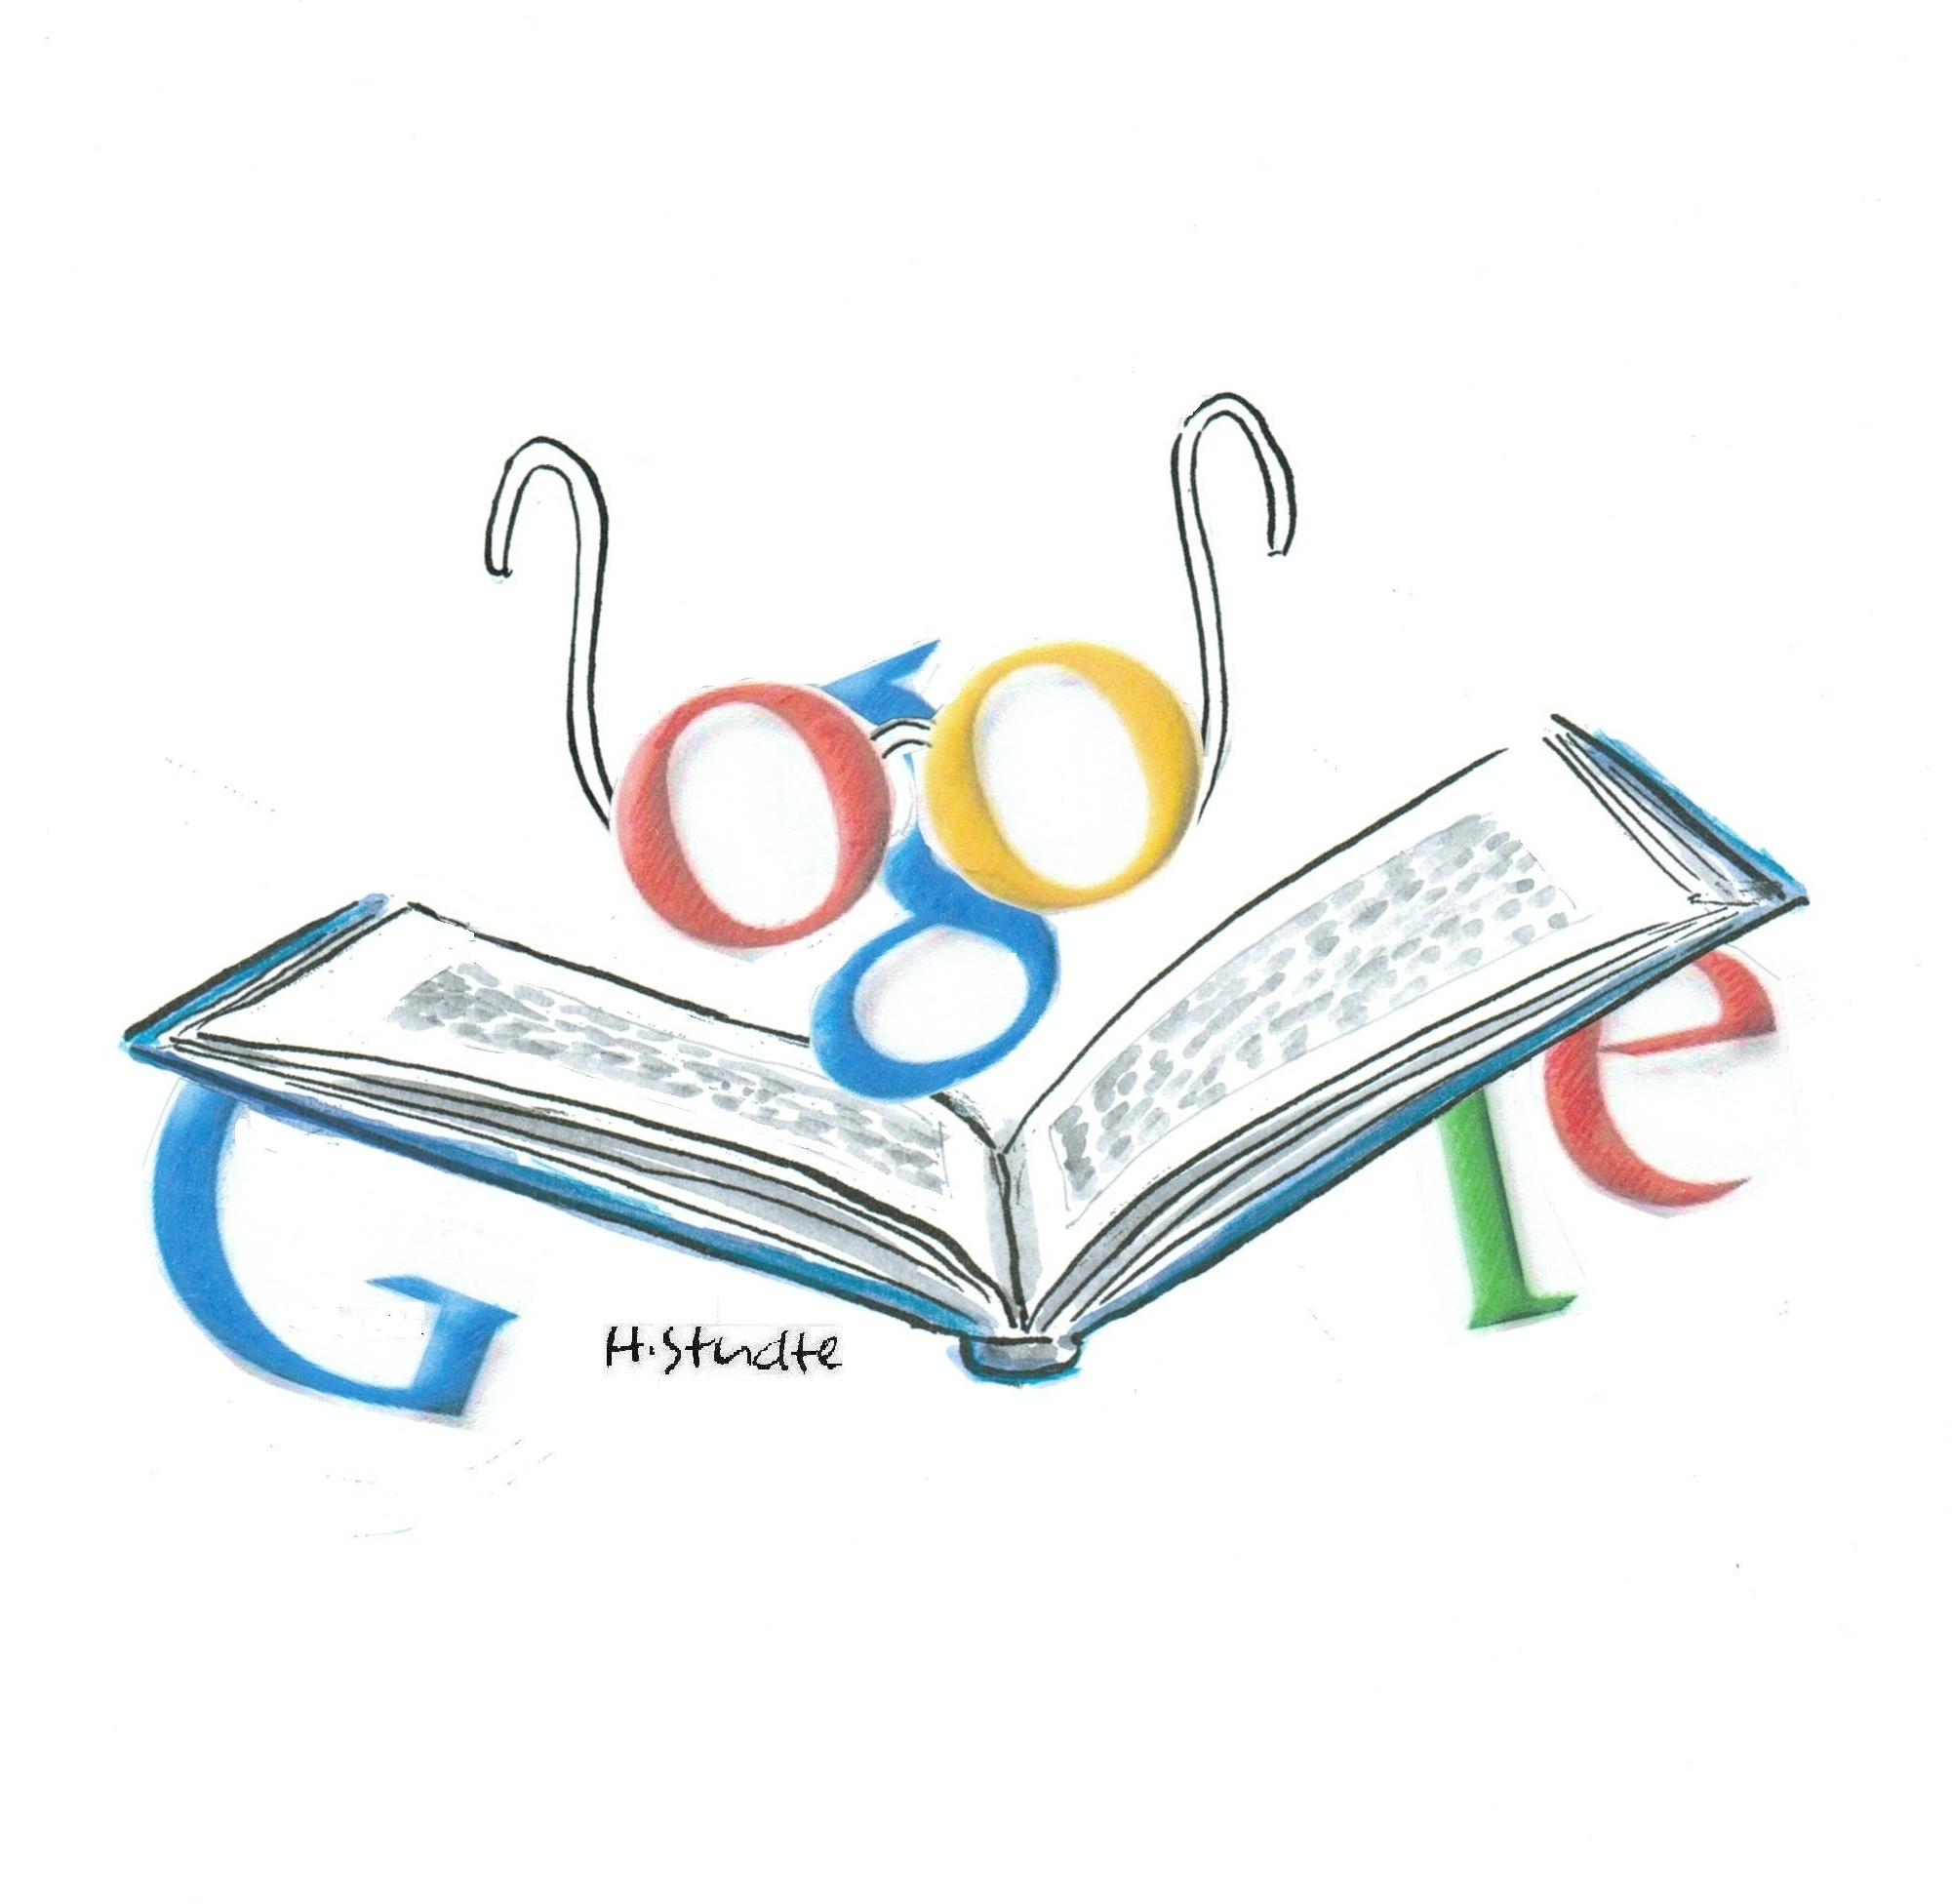 Google books ngram. Books ngram viewer. Google books ngram viewer. Books ngram. Google books ngram viewer meme.